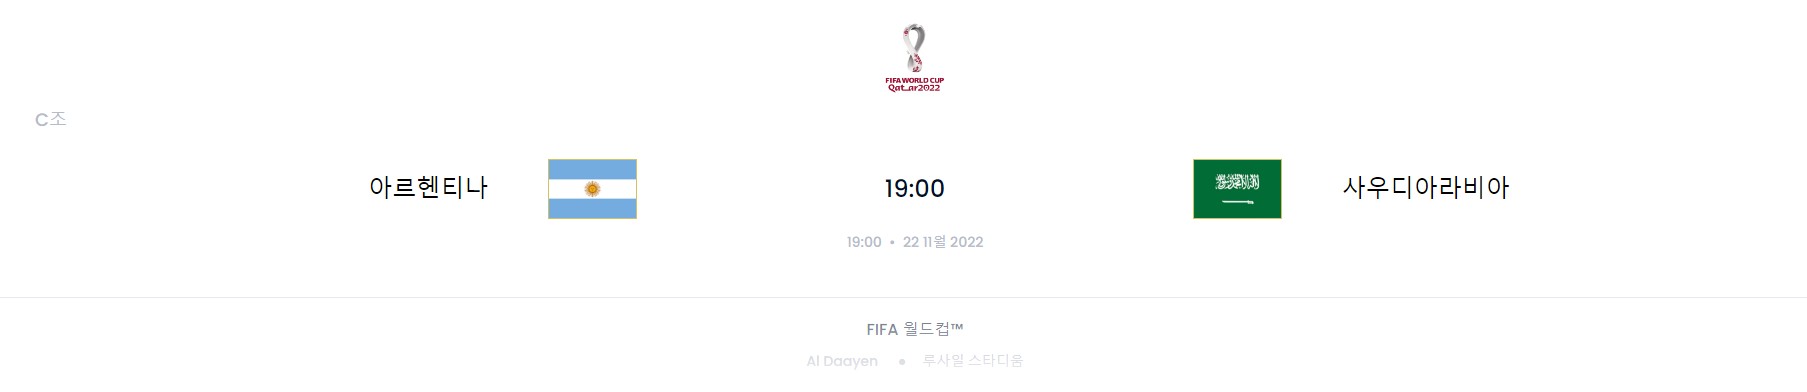 카타르 월드컵 C조 1경기 (아르헨티나 VS 사우디아라비아)